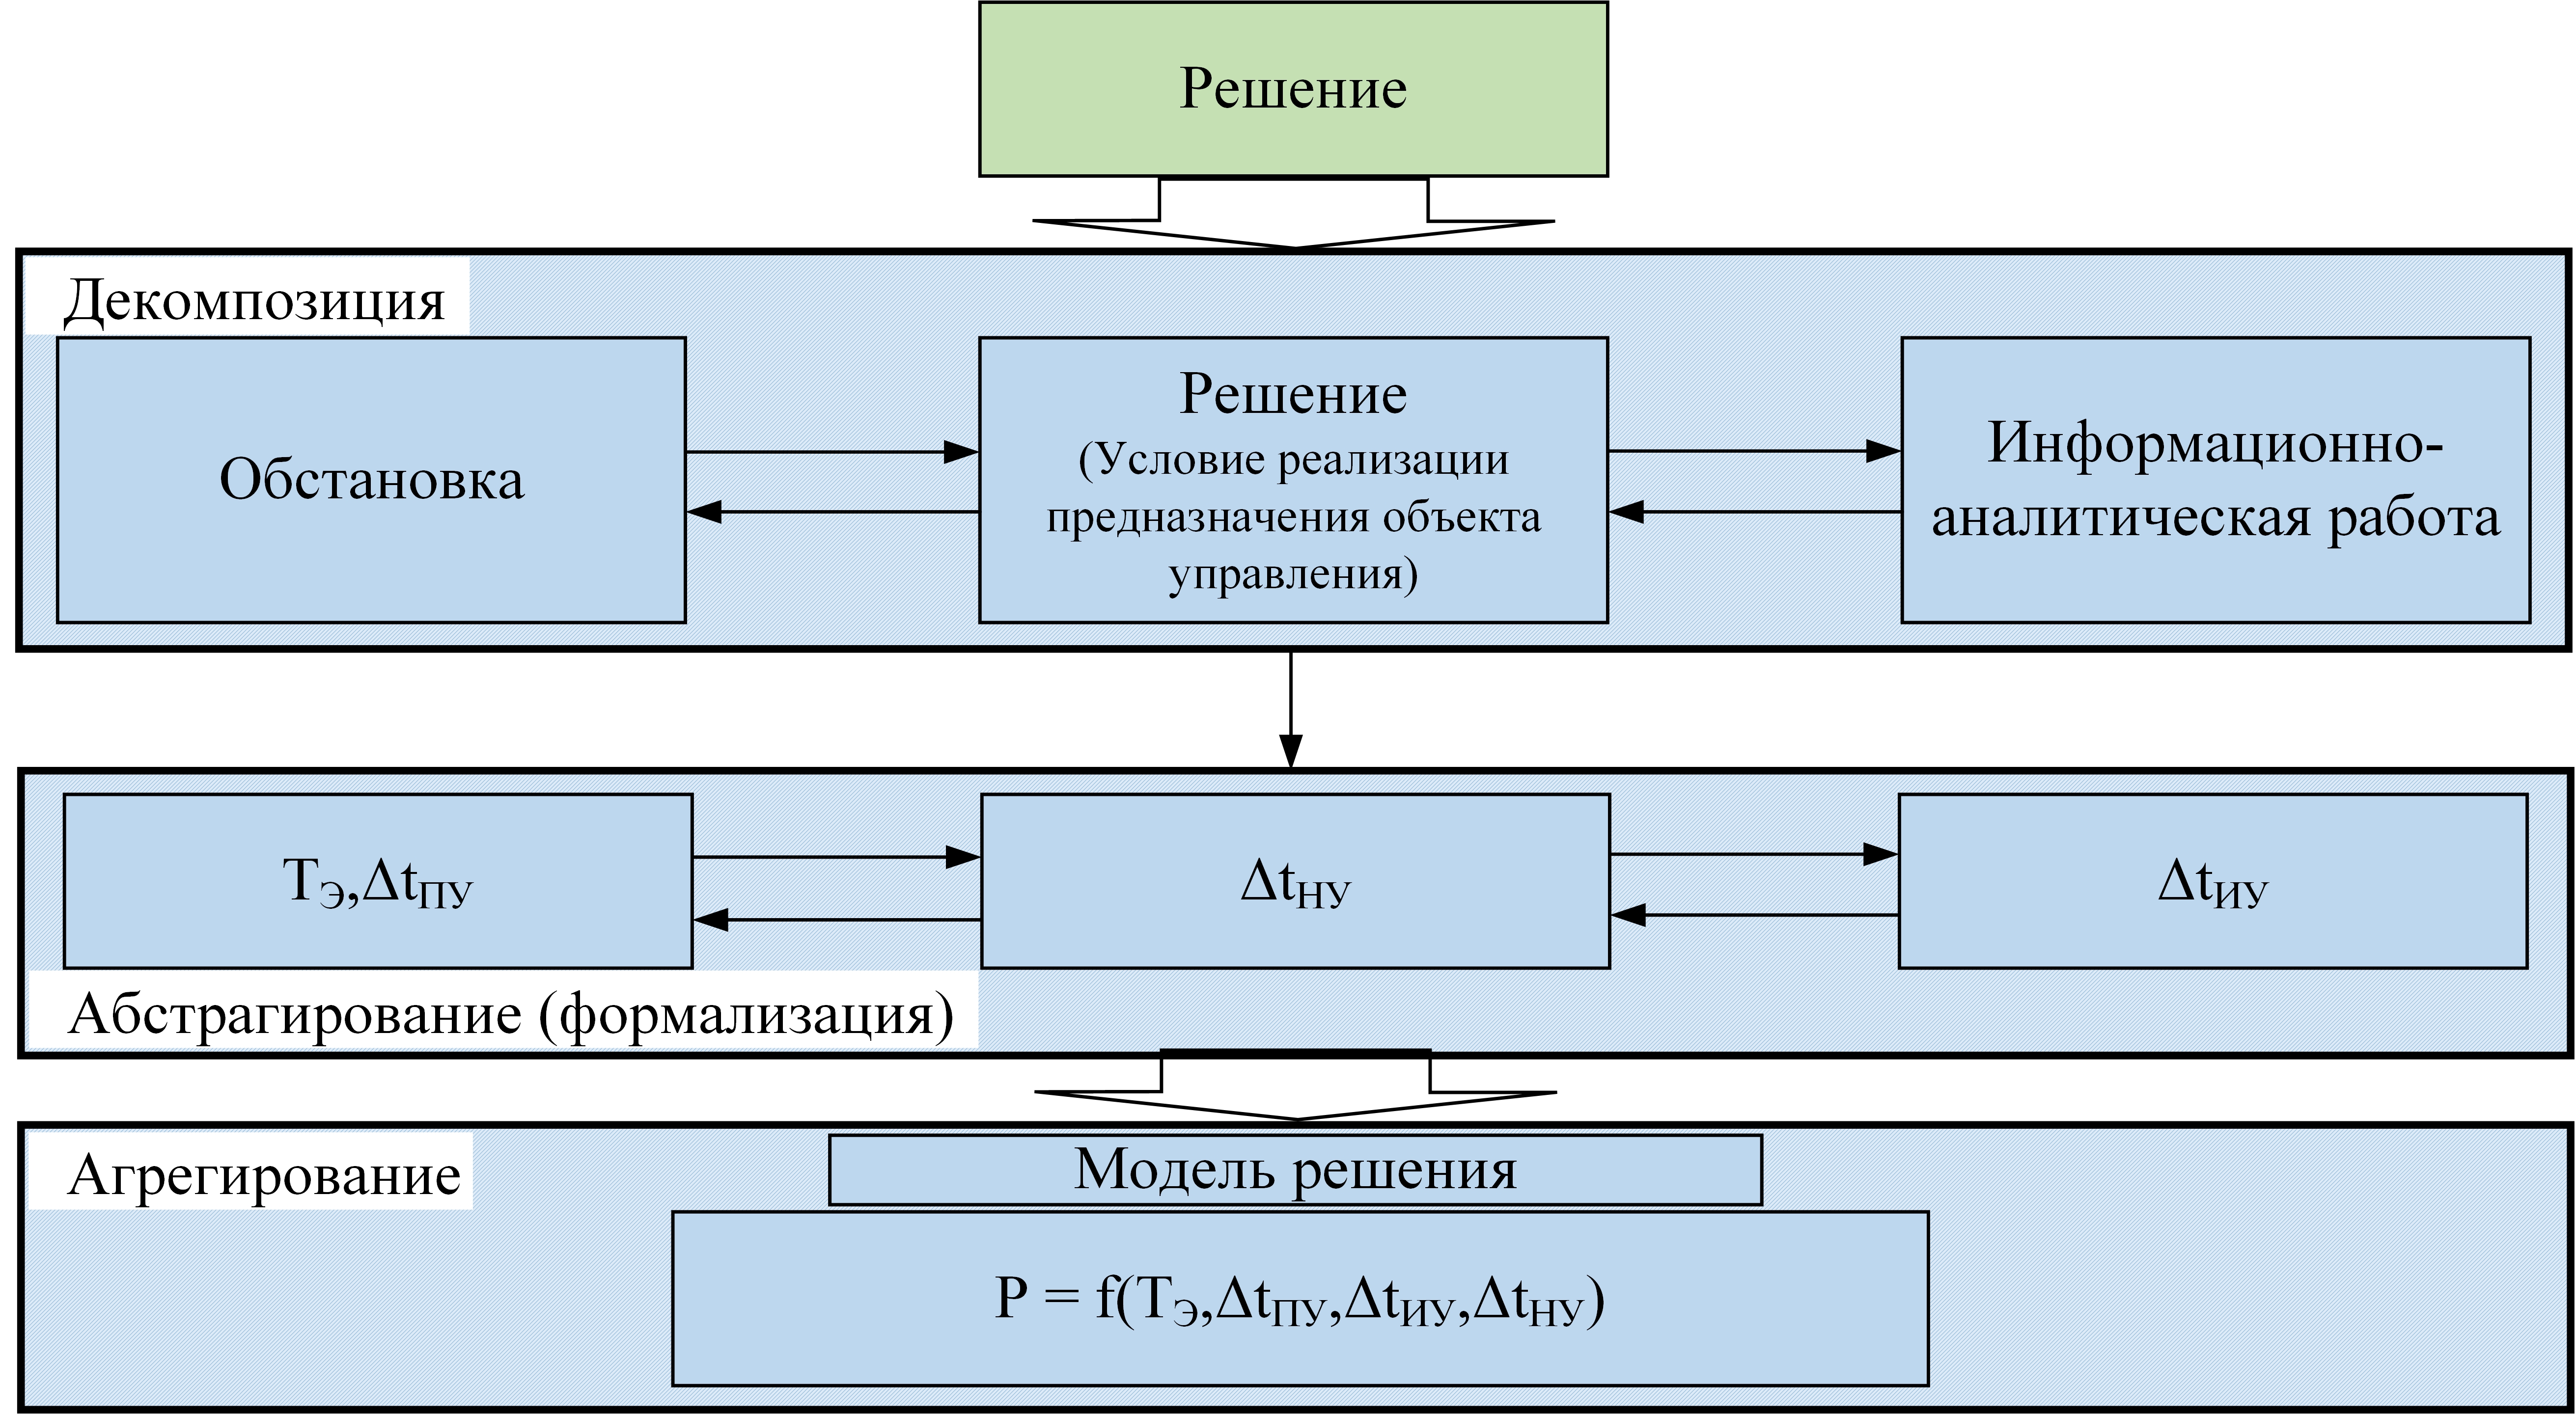 Структурная схема интерпретации процесса синтеза математической модели «Решения»